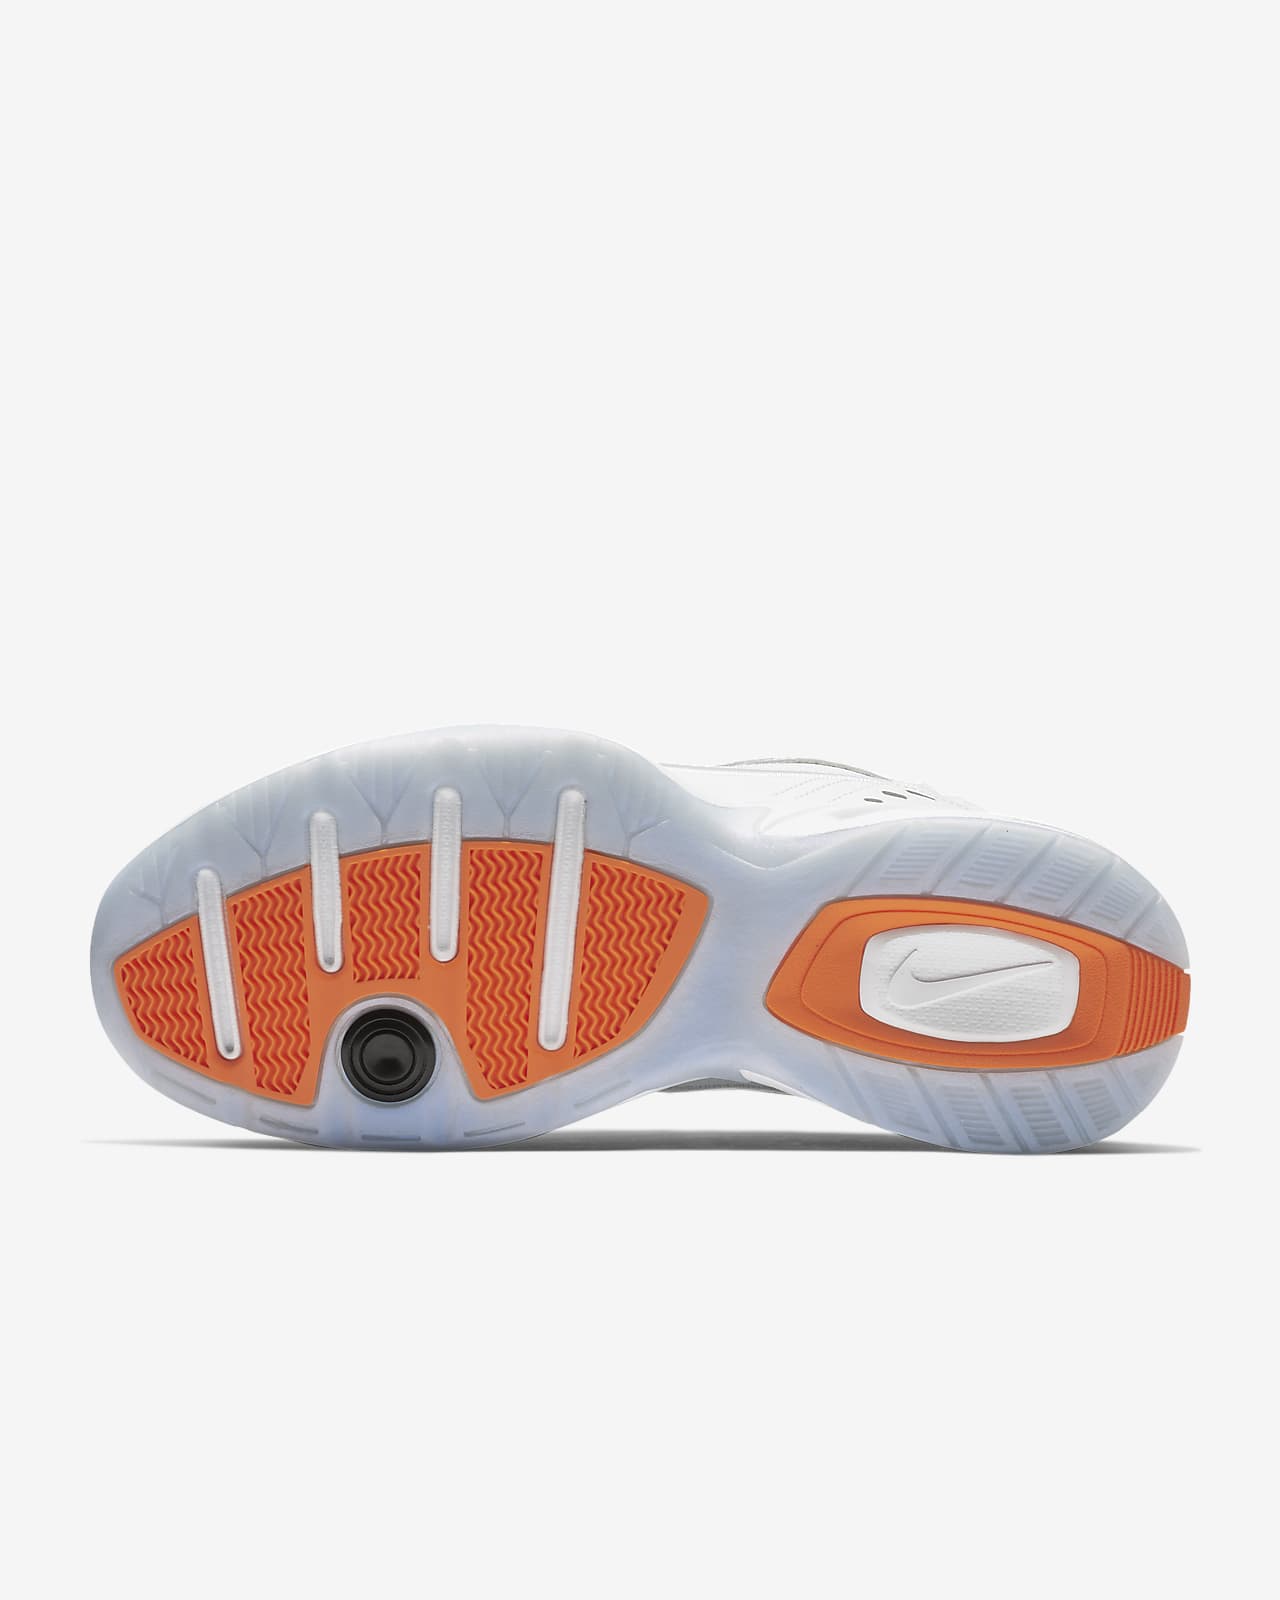 Calzado Air Monarch IV Premium. Nike.com